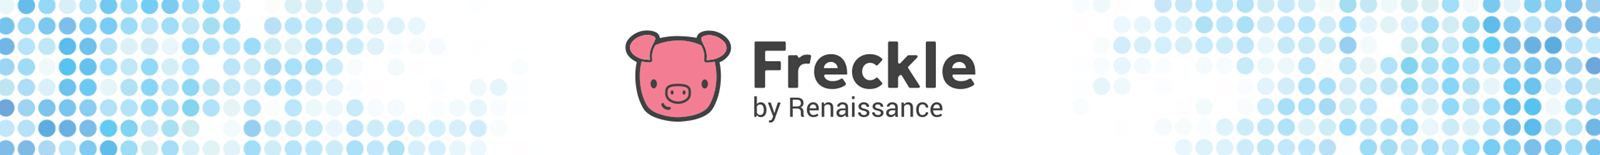 Freckle by Renaissance